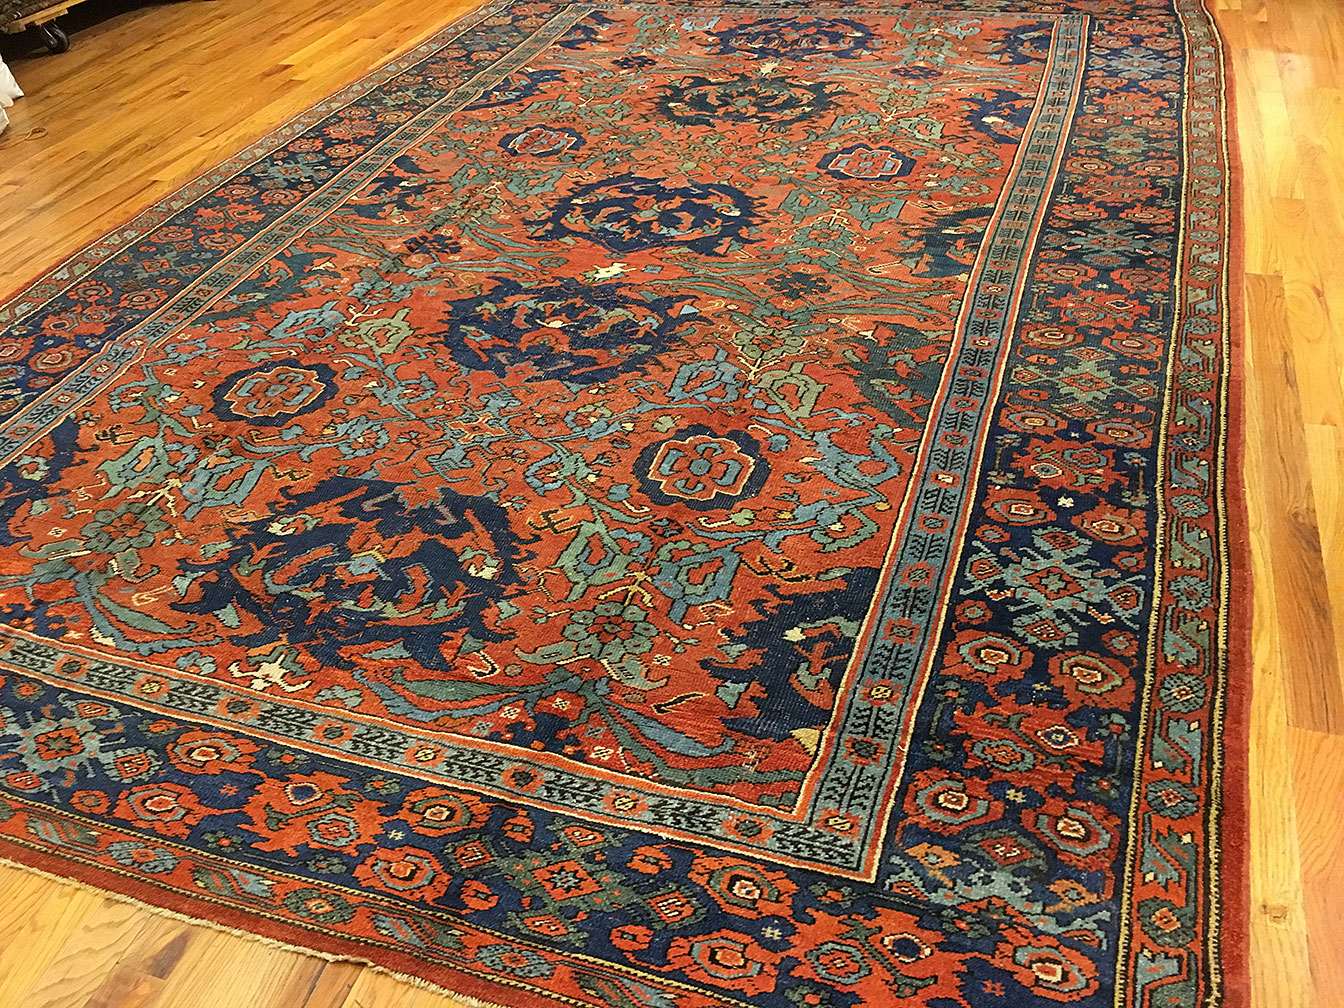 Antique smyrna Carpet - # 52109